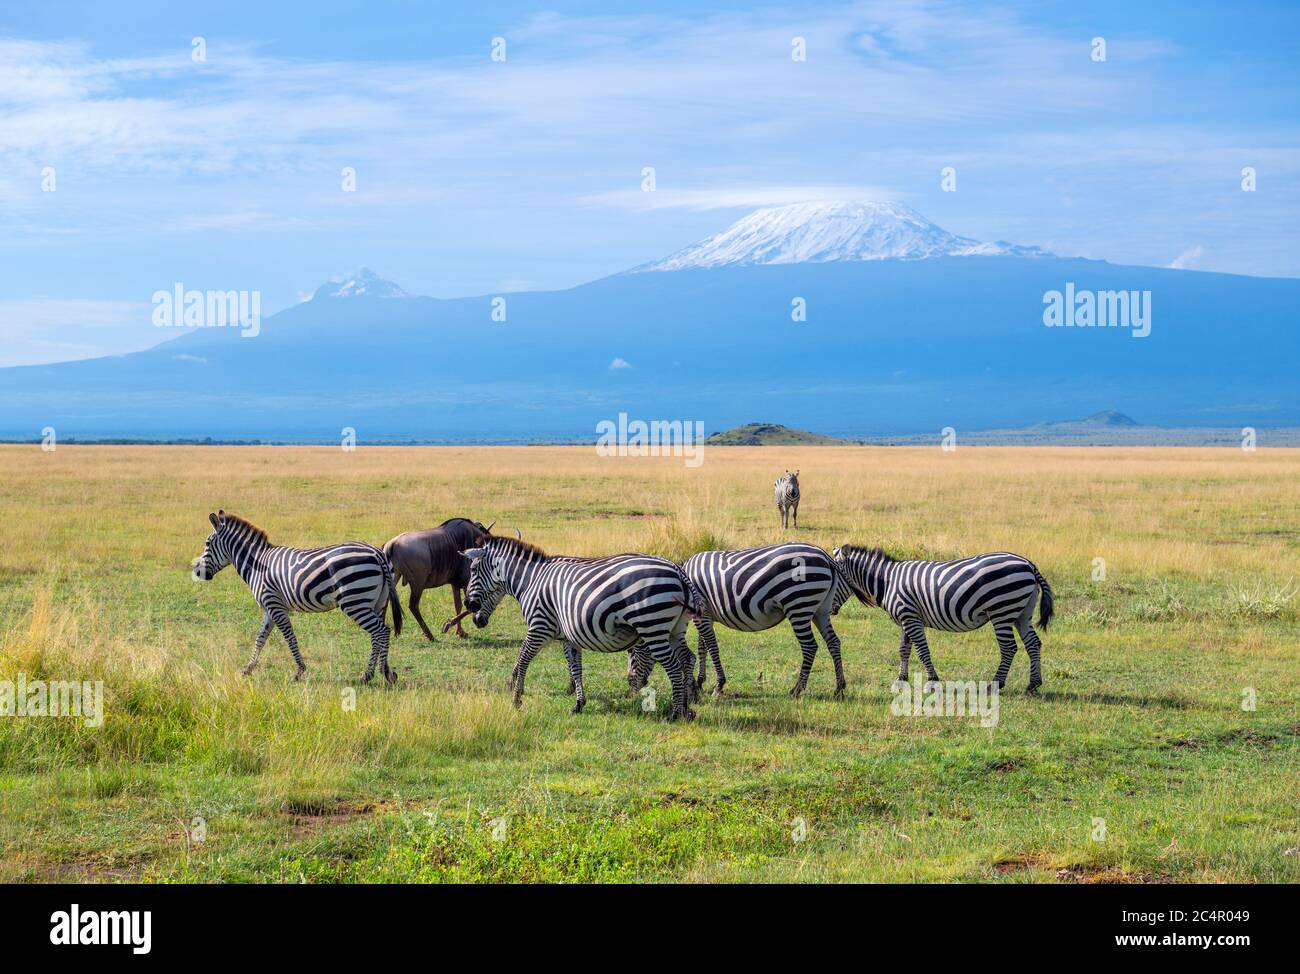 Zébra de Grant (Equus quagga boehmi) devant le mont Kilimanjaro, parc national d'Amboseli, Kenya, Afrique Banque D'Images